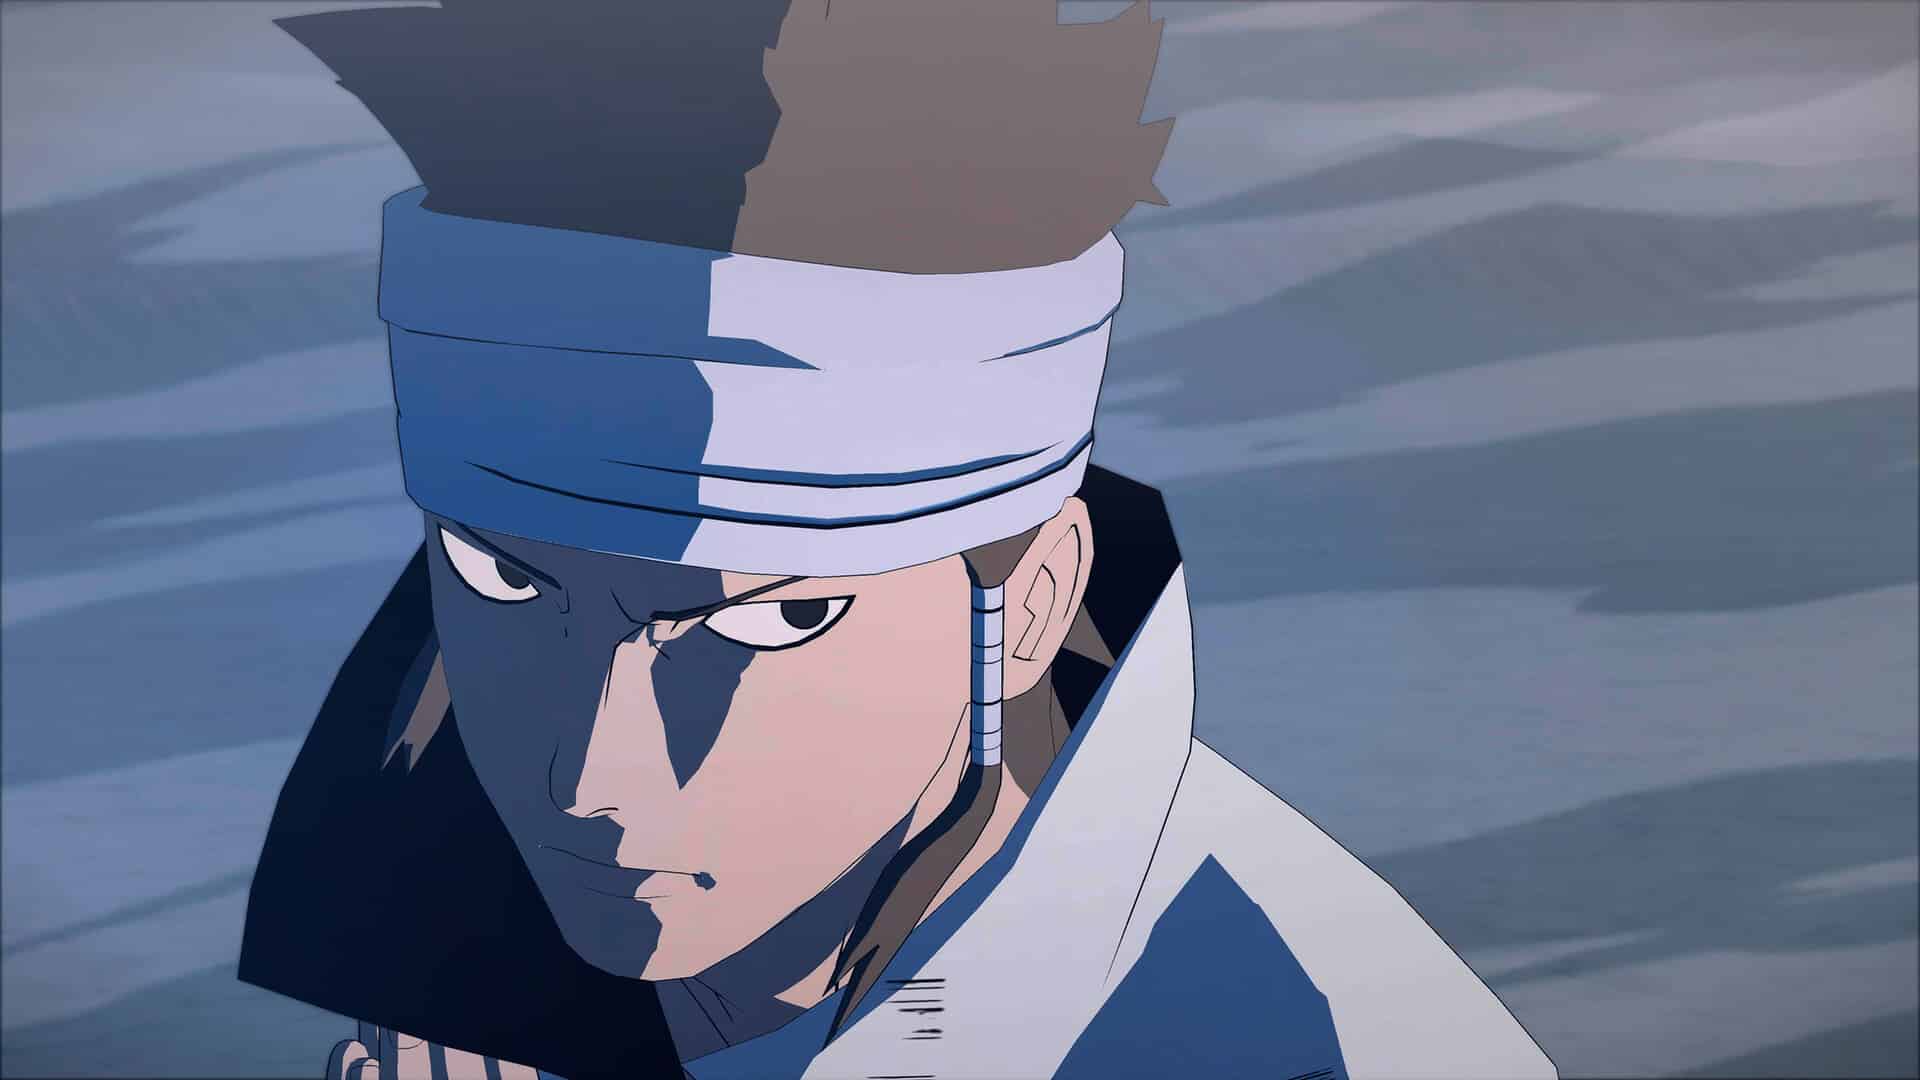 Naruto x Boruto Ultimate Ninja Storm Connections story trailer